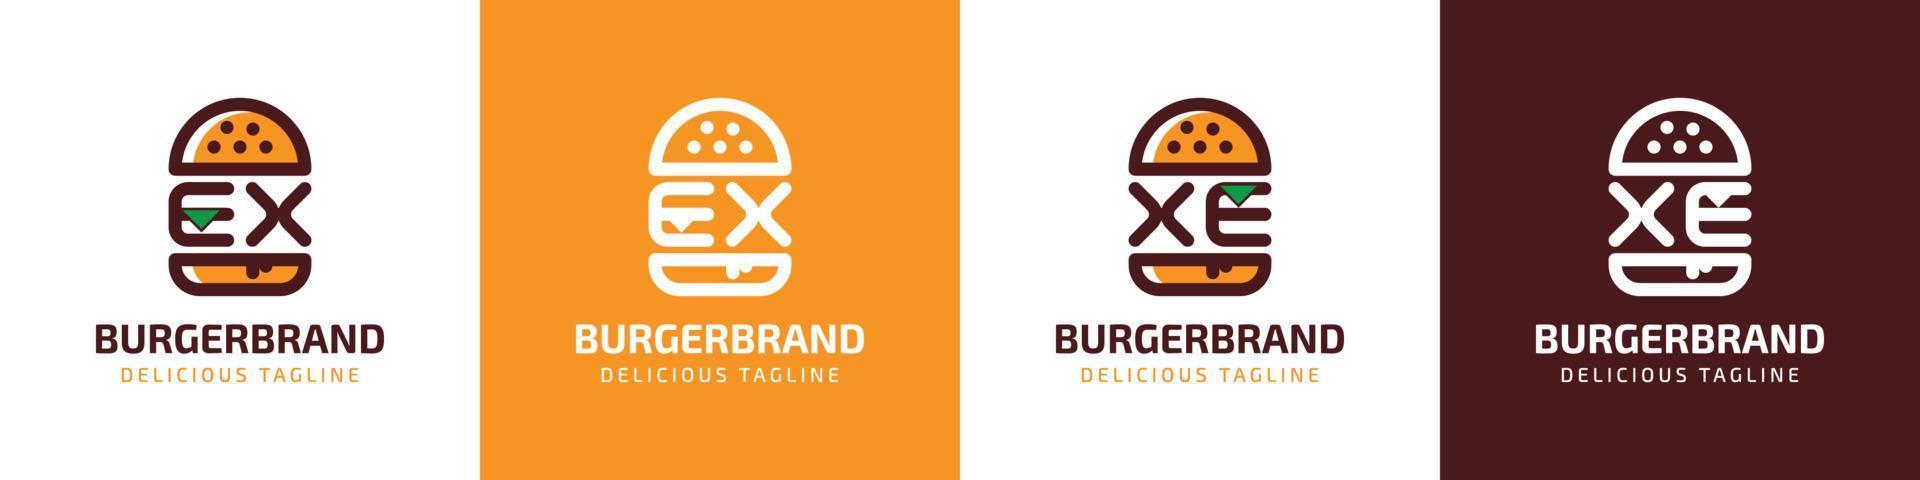 brev ex och xe burger logotyp, lämplig för några företag relaterad till burger med ex eller xe initialer. vektor